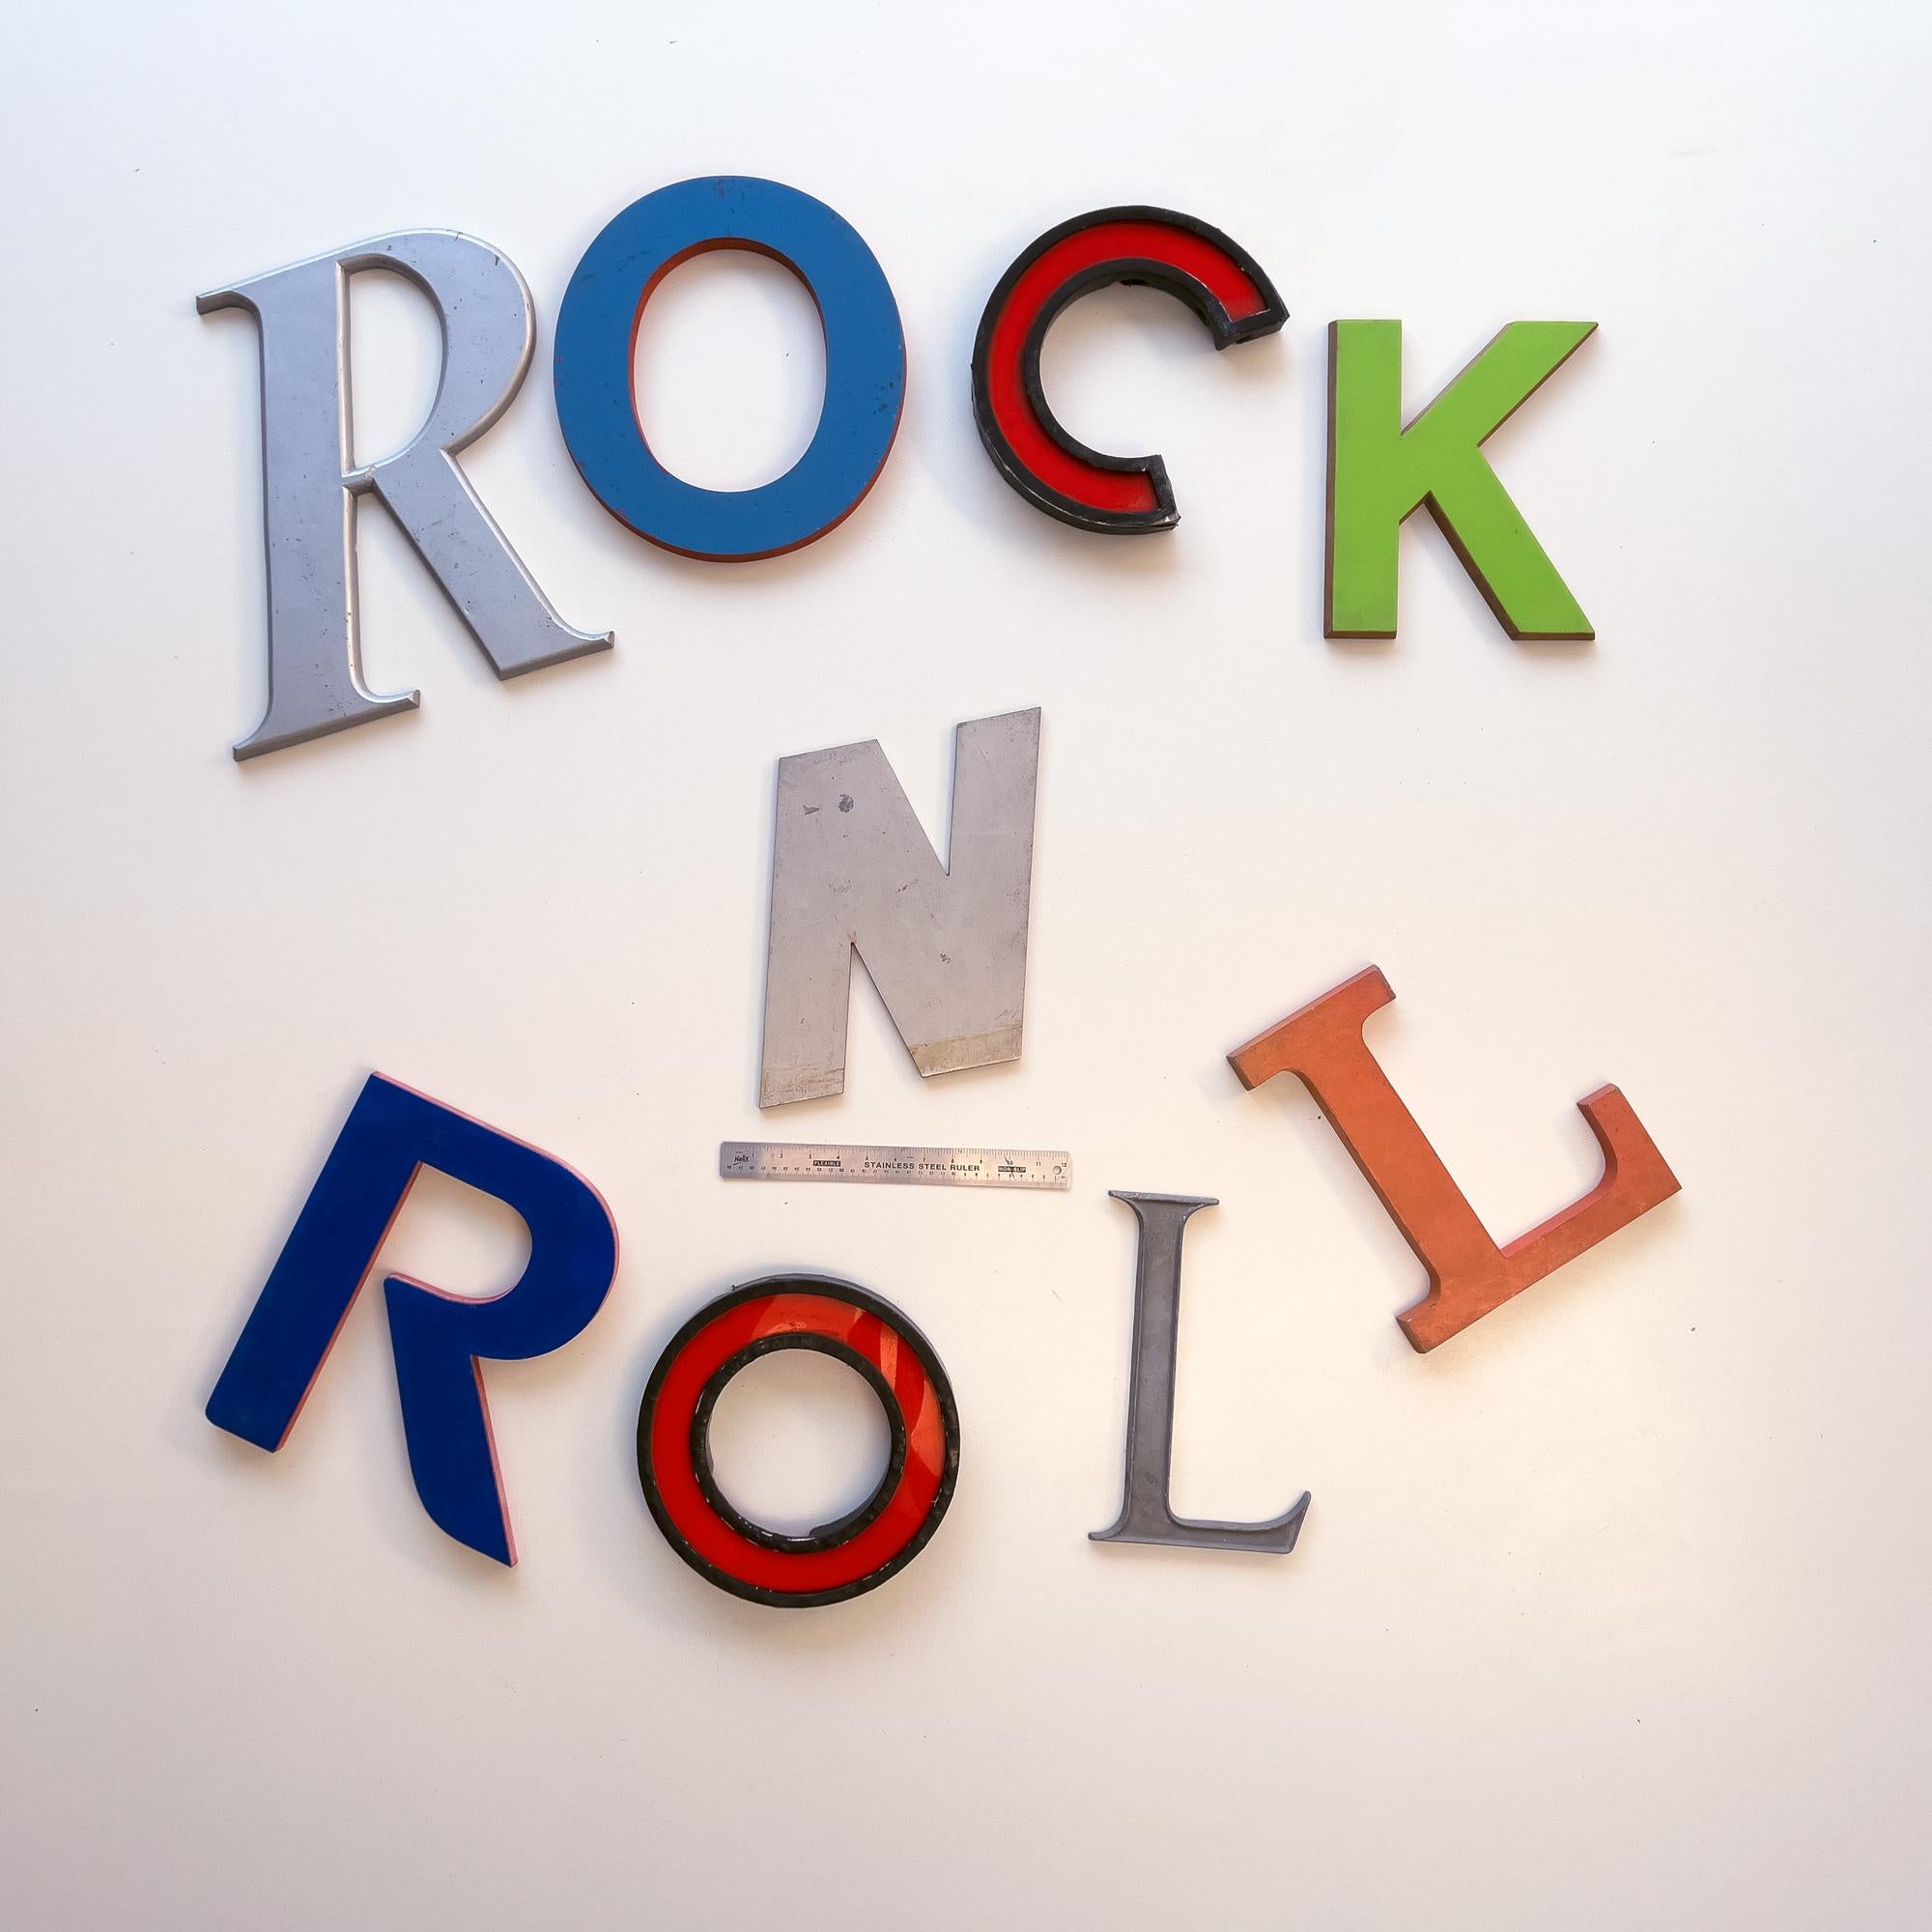 rock n roll letters